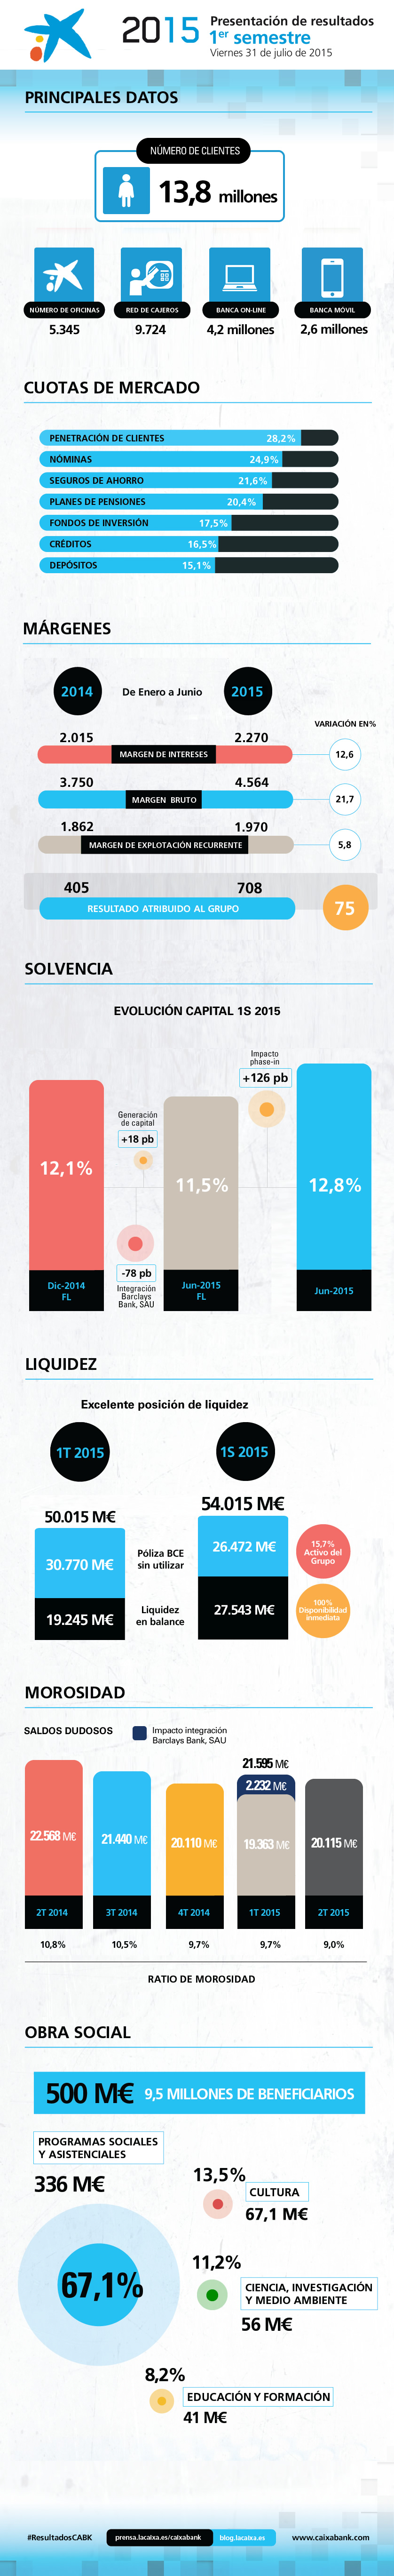 Principales datos de la presentación de resultados 1S 2015 de CaixaBank